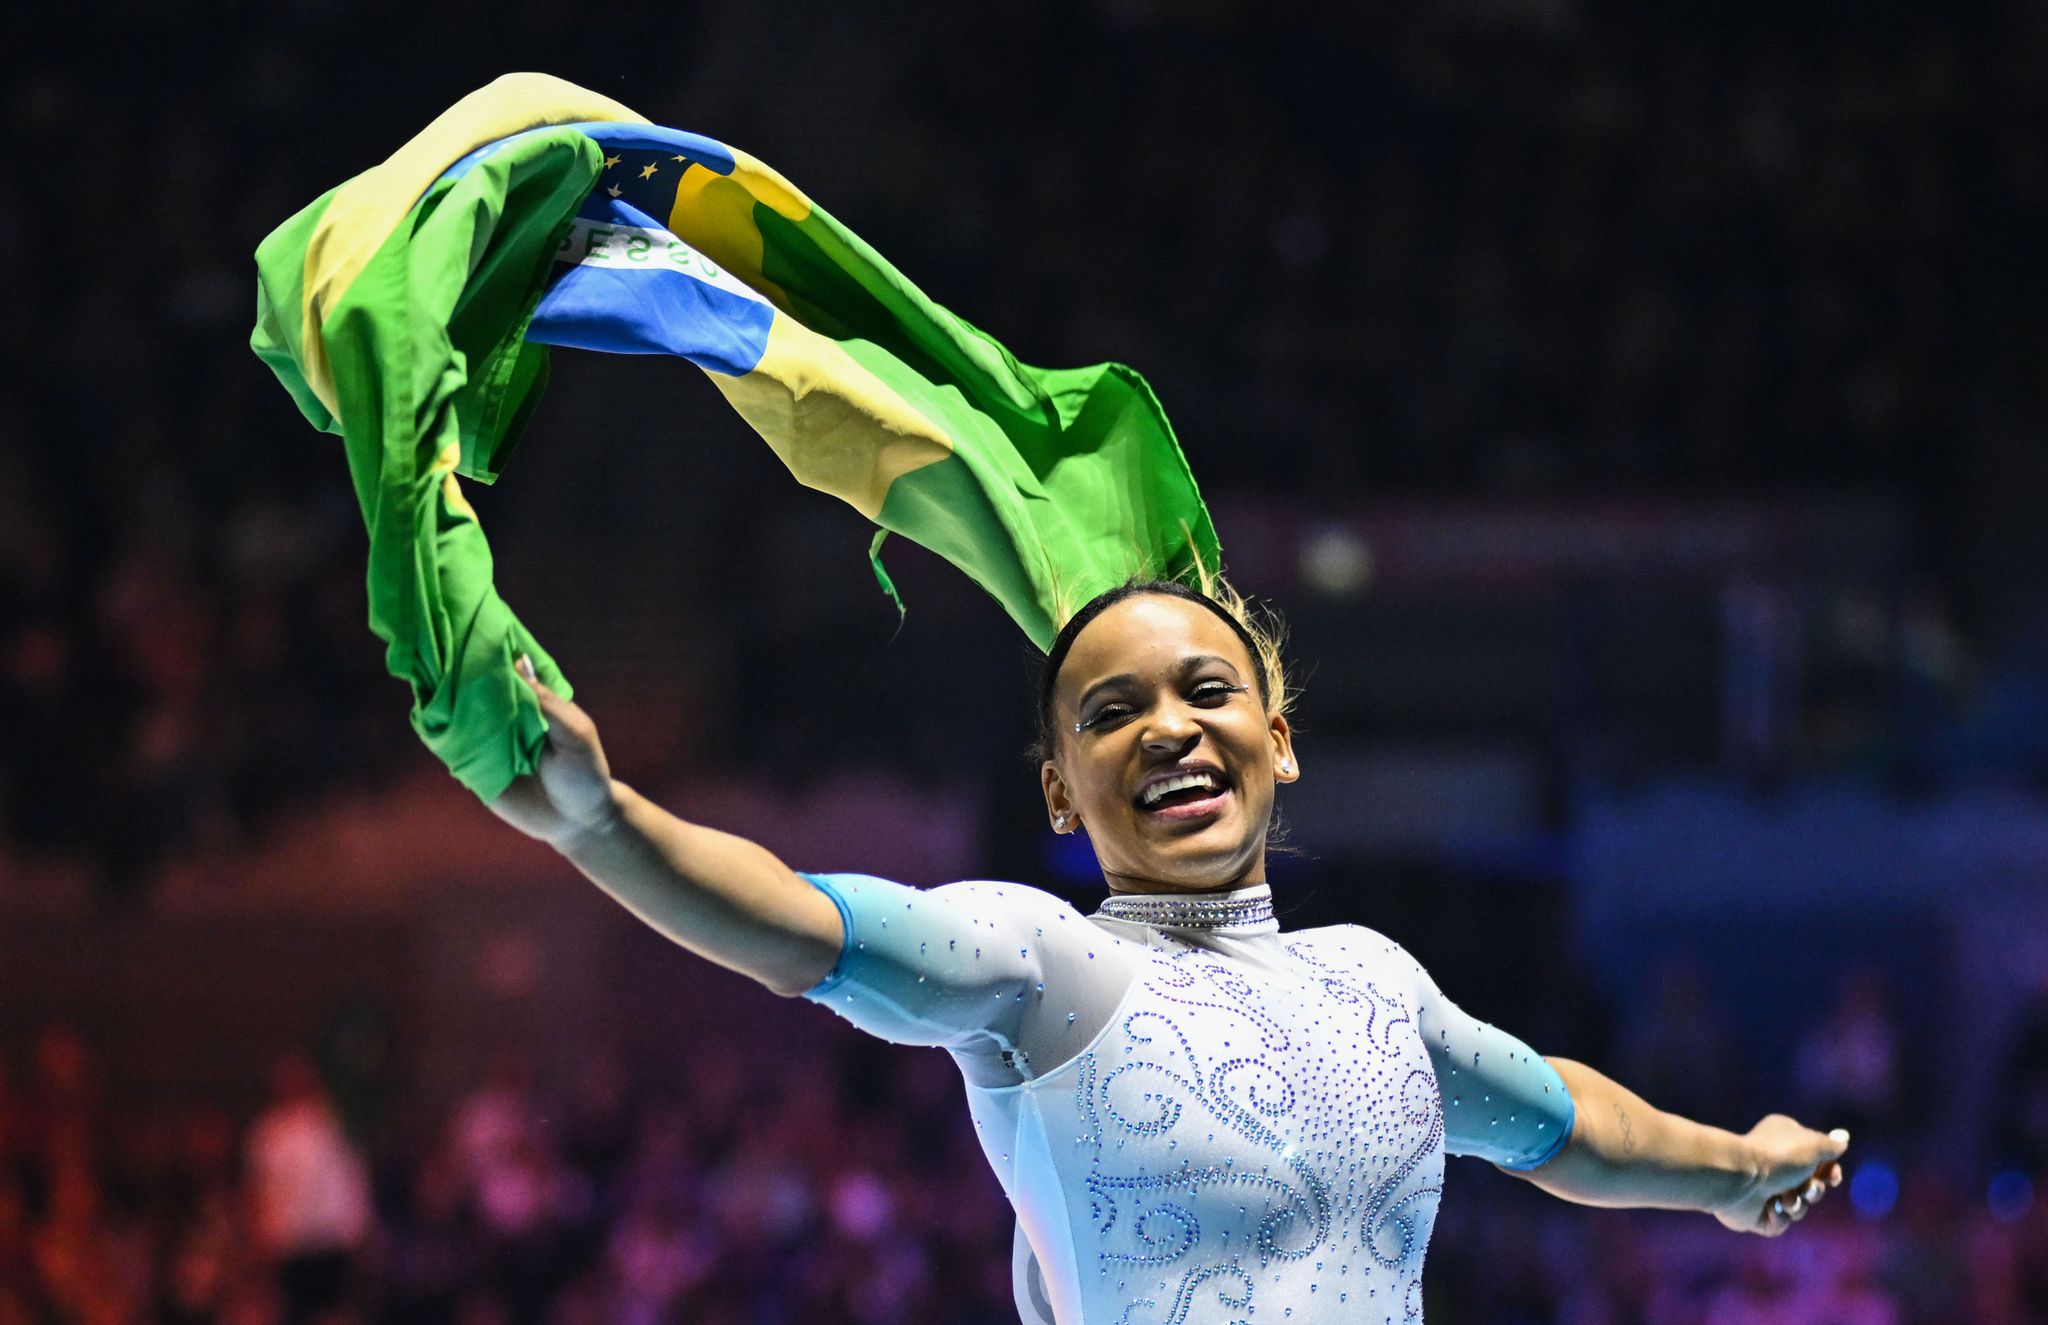 Rebeca Andrade aus Brasilien gewinnt den WM-Titel beim Sprung.